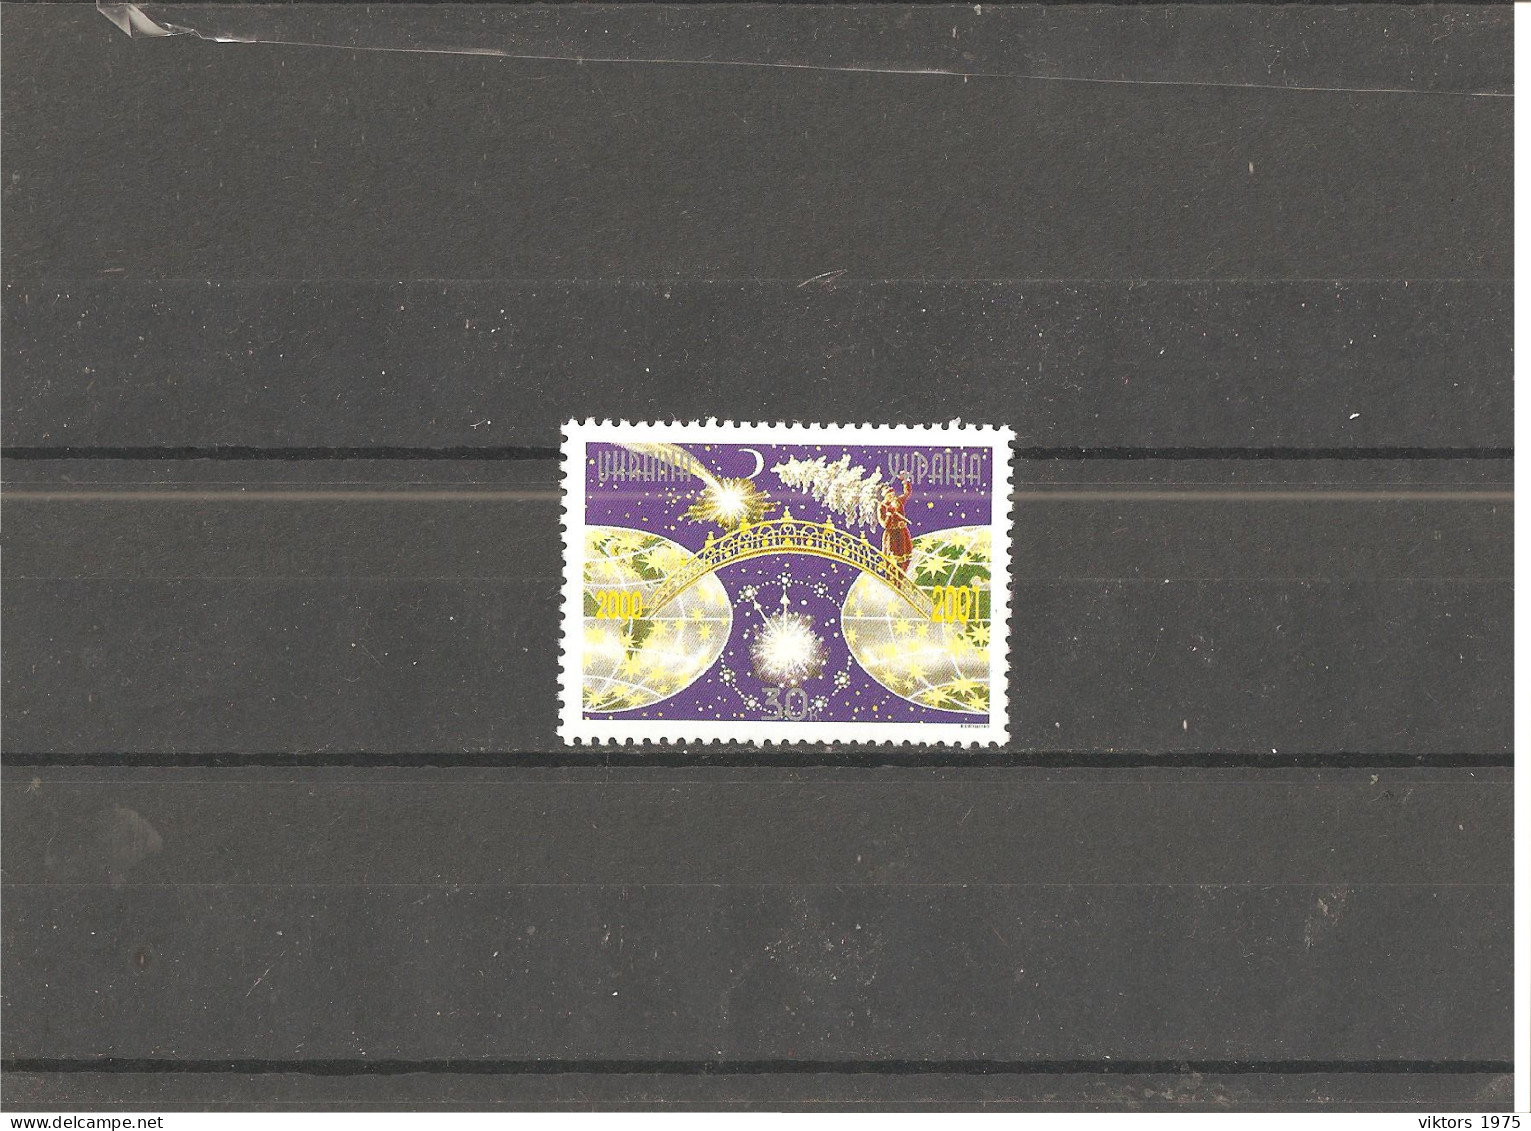 MNH Stamp Nr.419 In MICHEL Catalog - Ukraine